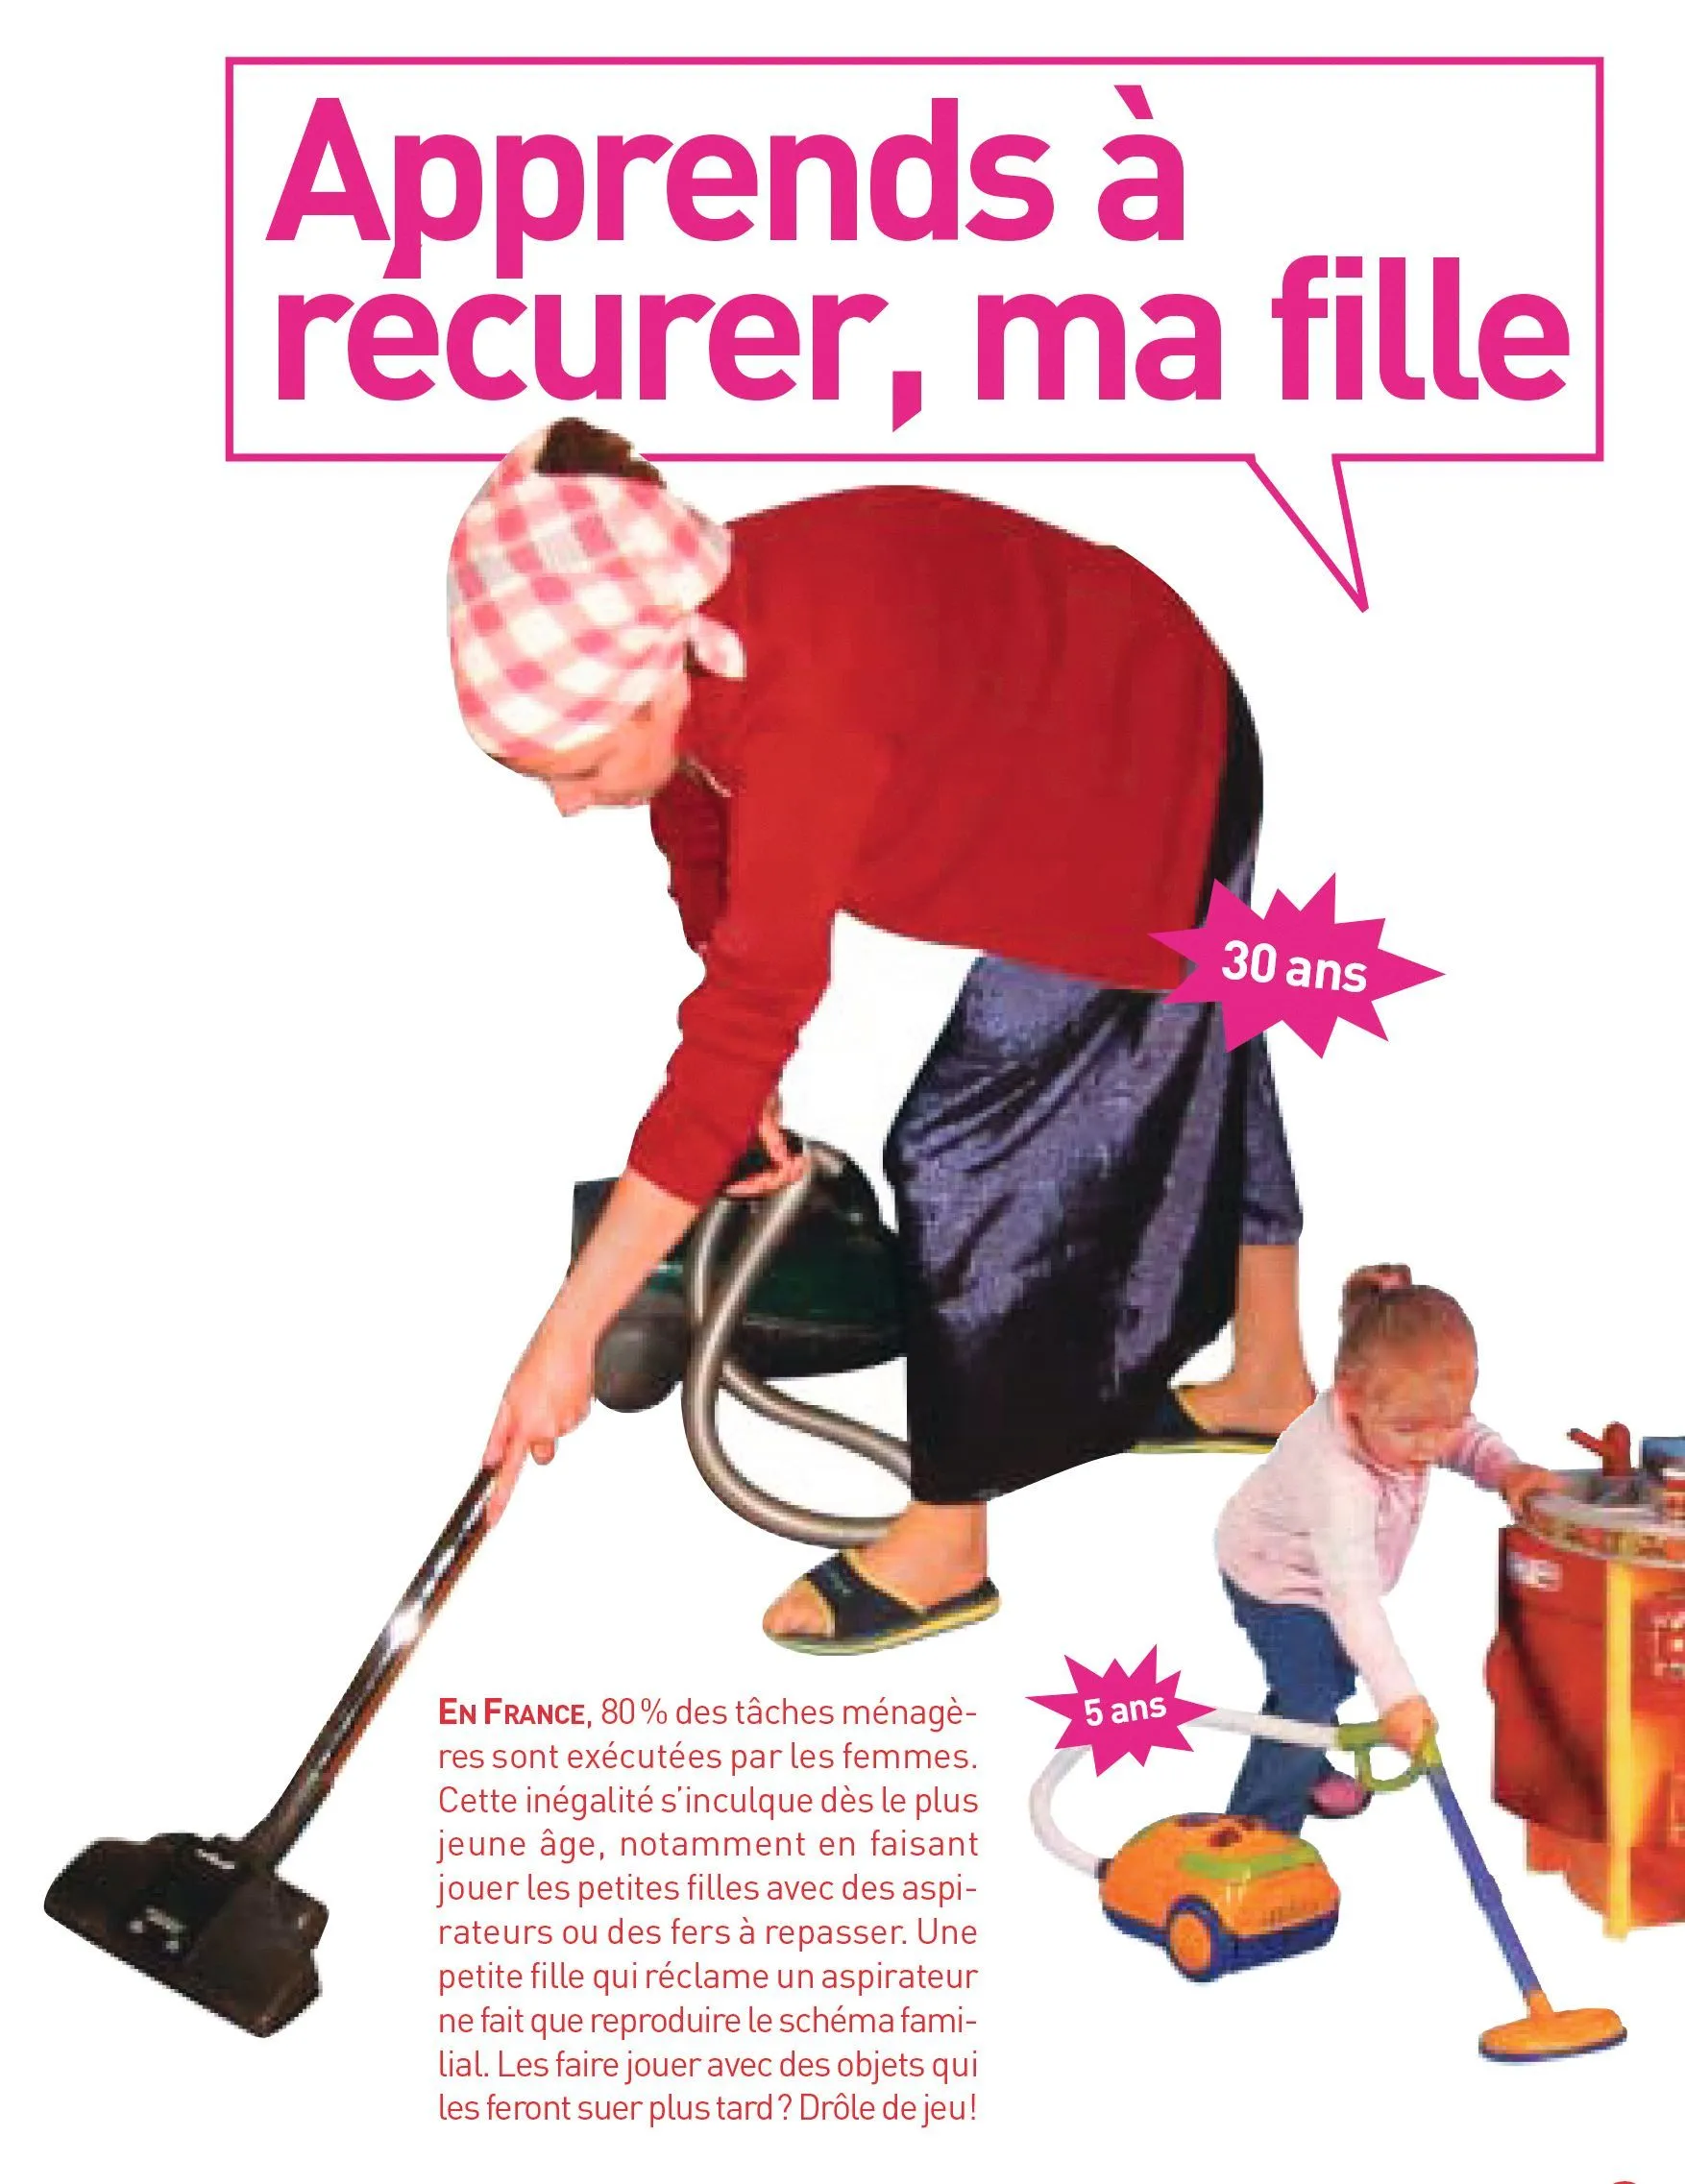 Collectif contre le publisexisme, Catalogue contre les jouets sexistes, 2007.